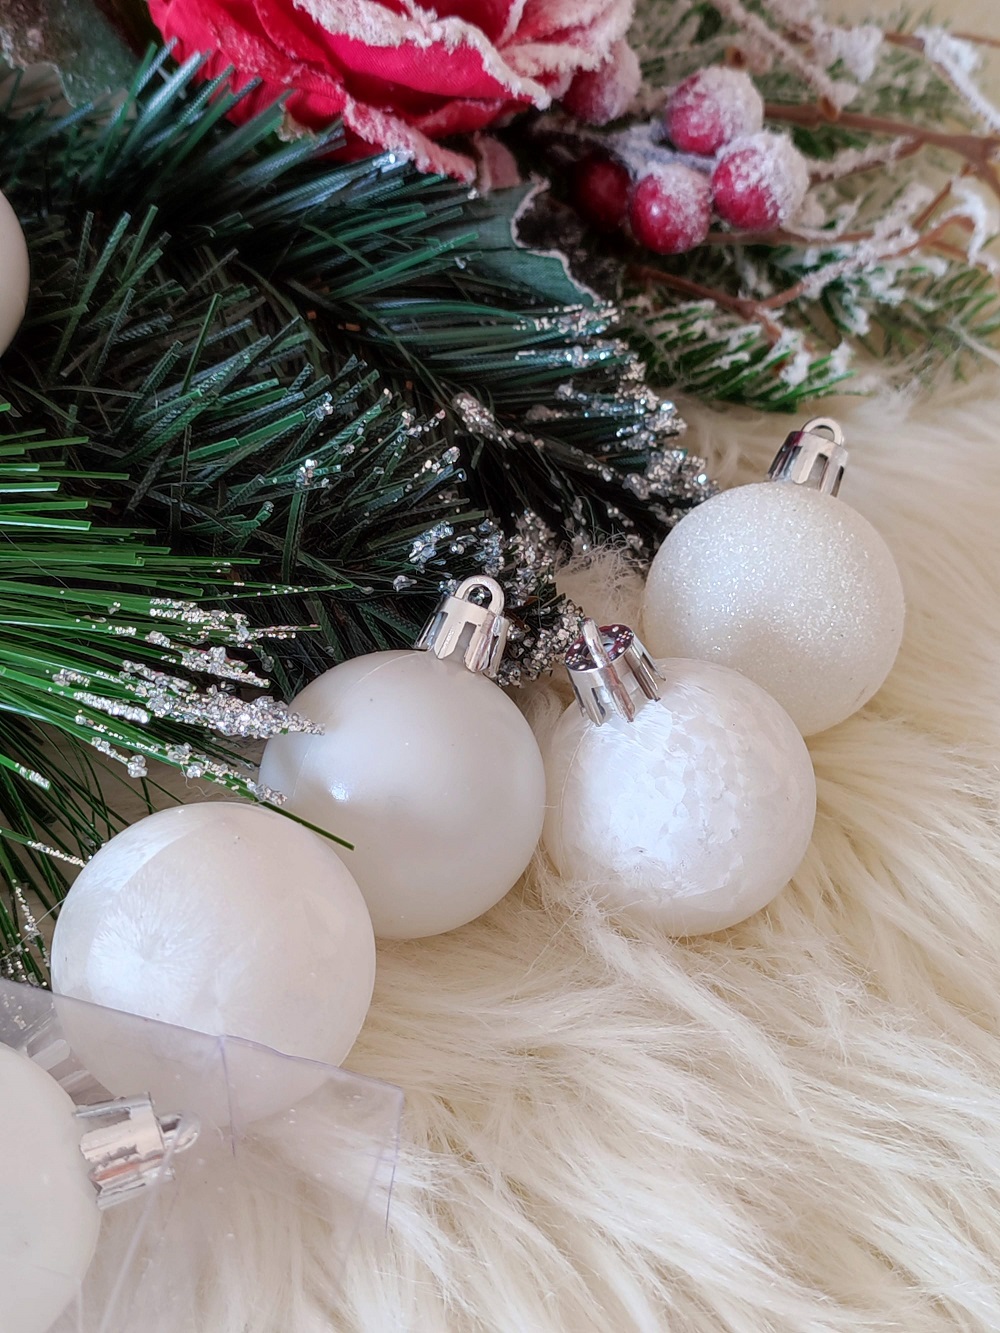 AKCIA: Biele vianočné gule tri druhy 4 cm 12 ks len za 2,00 €